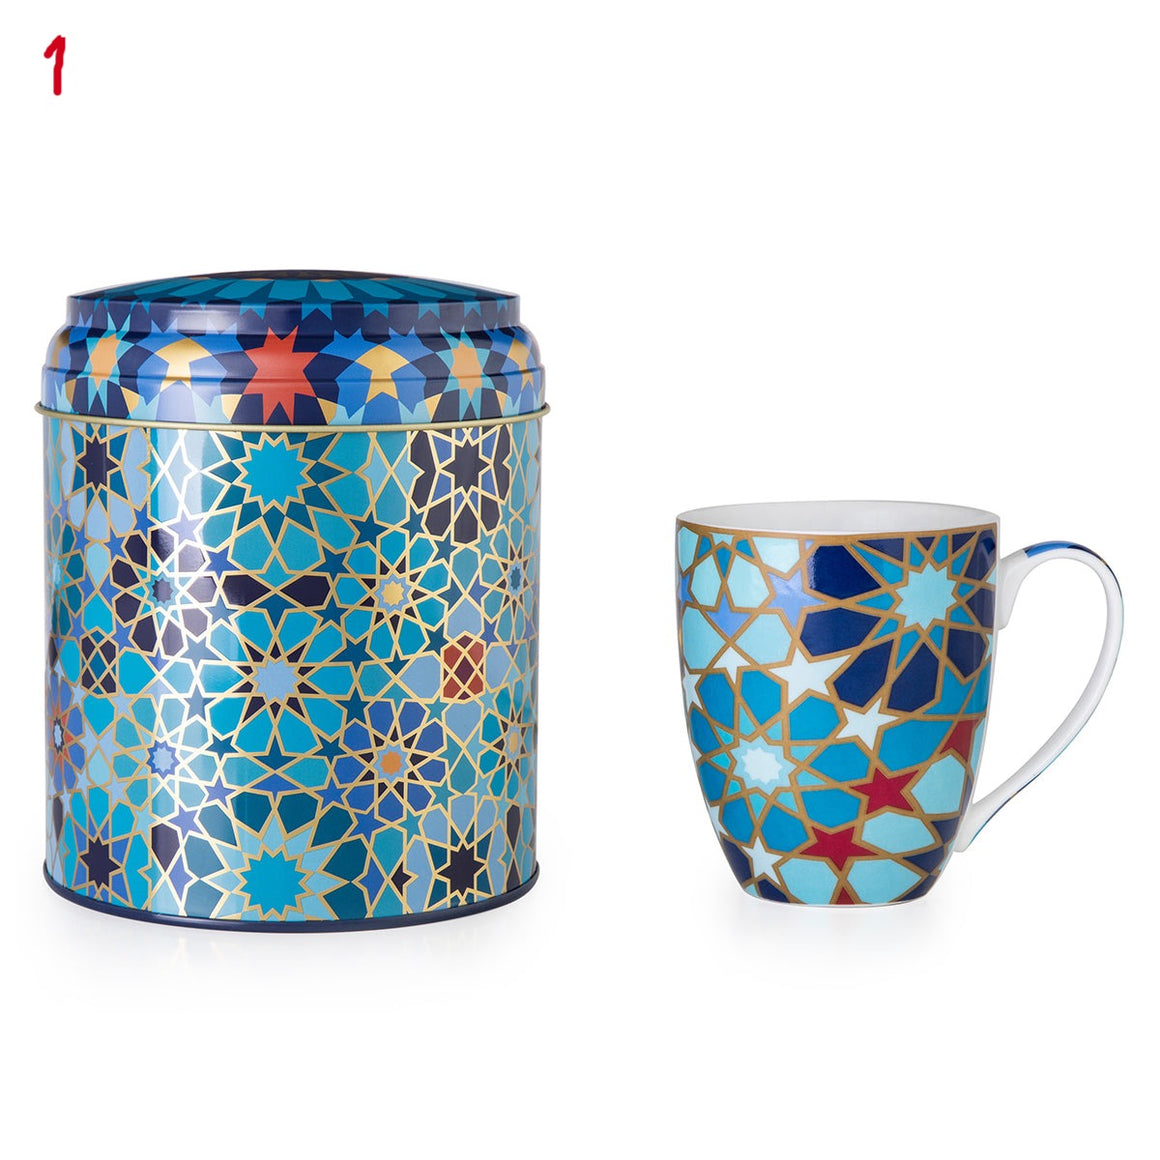 Tin Box with Mug - Blue Moucharabieh